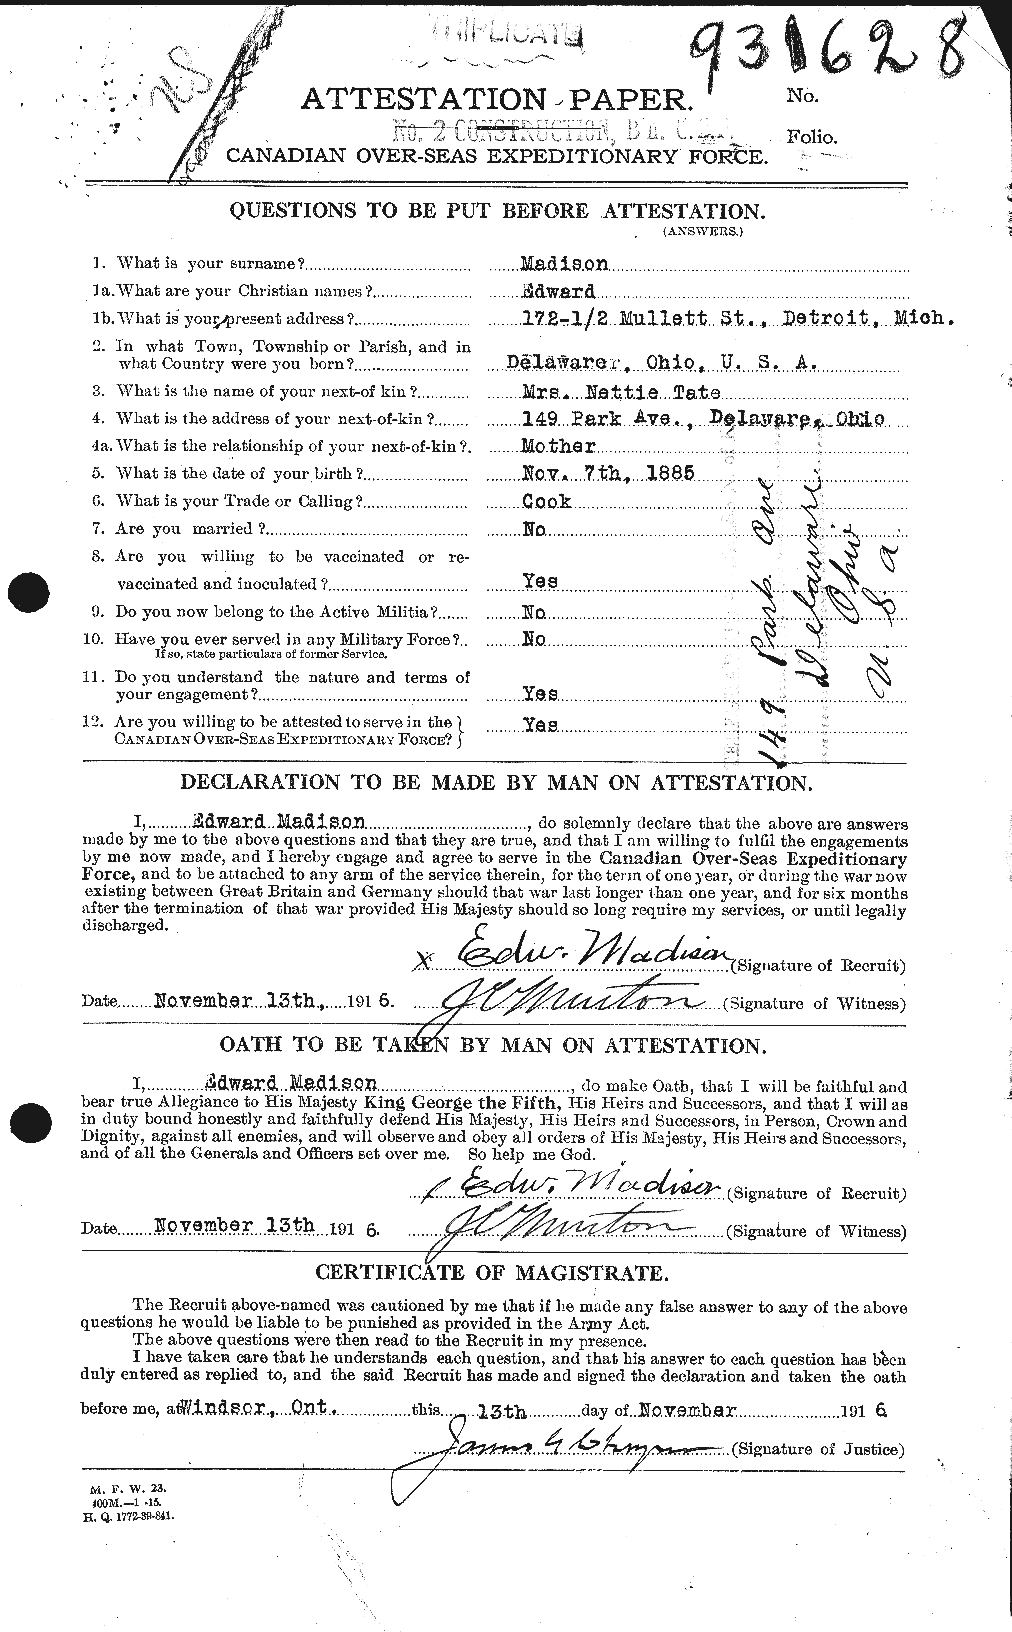 Dossiers du Personnel de la Première Guerre mondiale - CEC 476645a